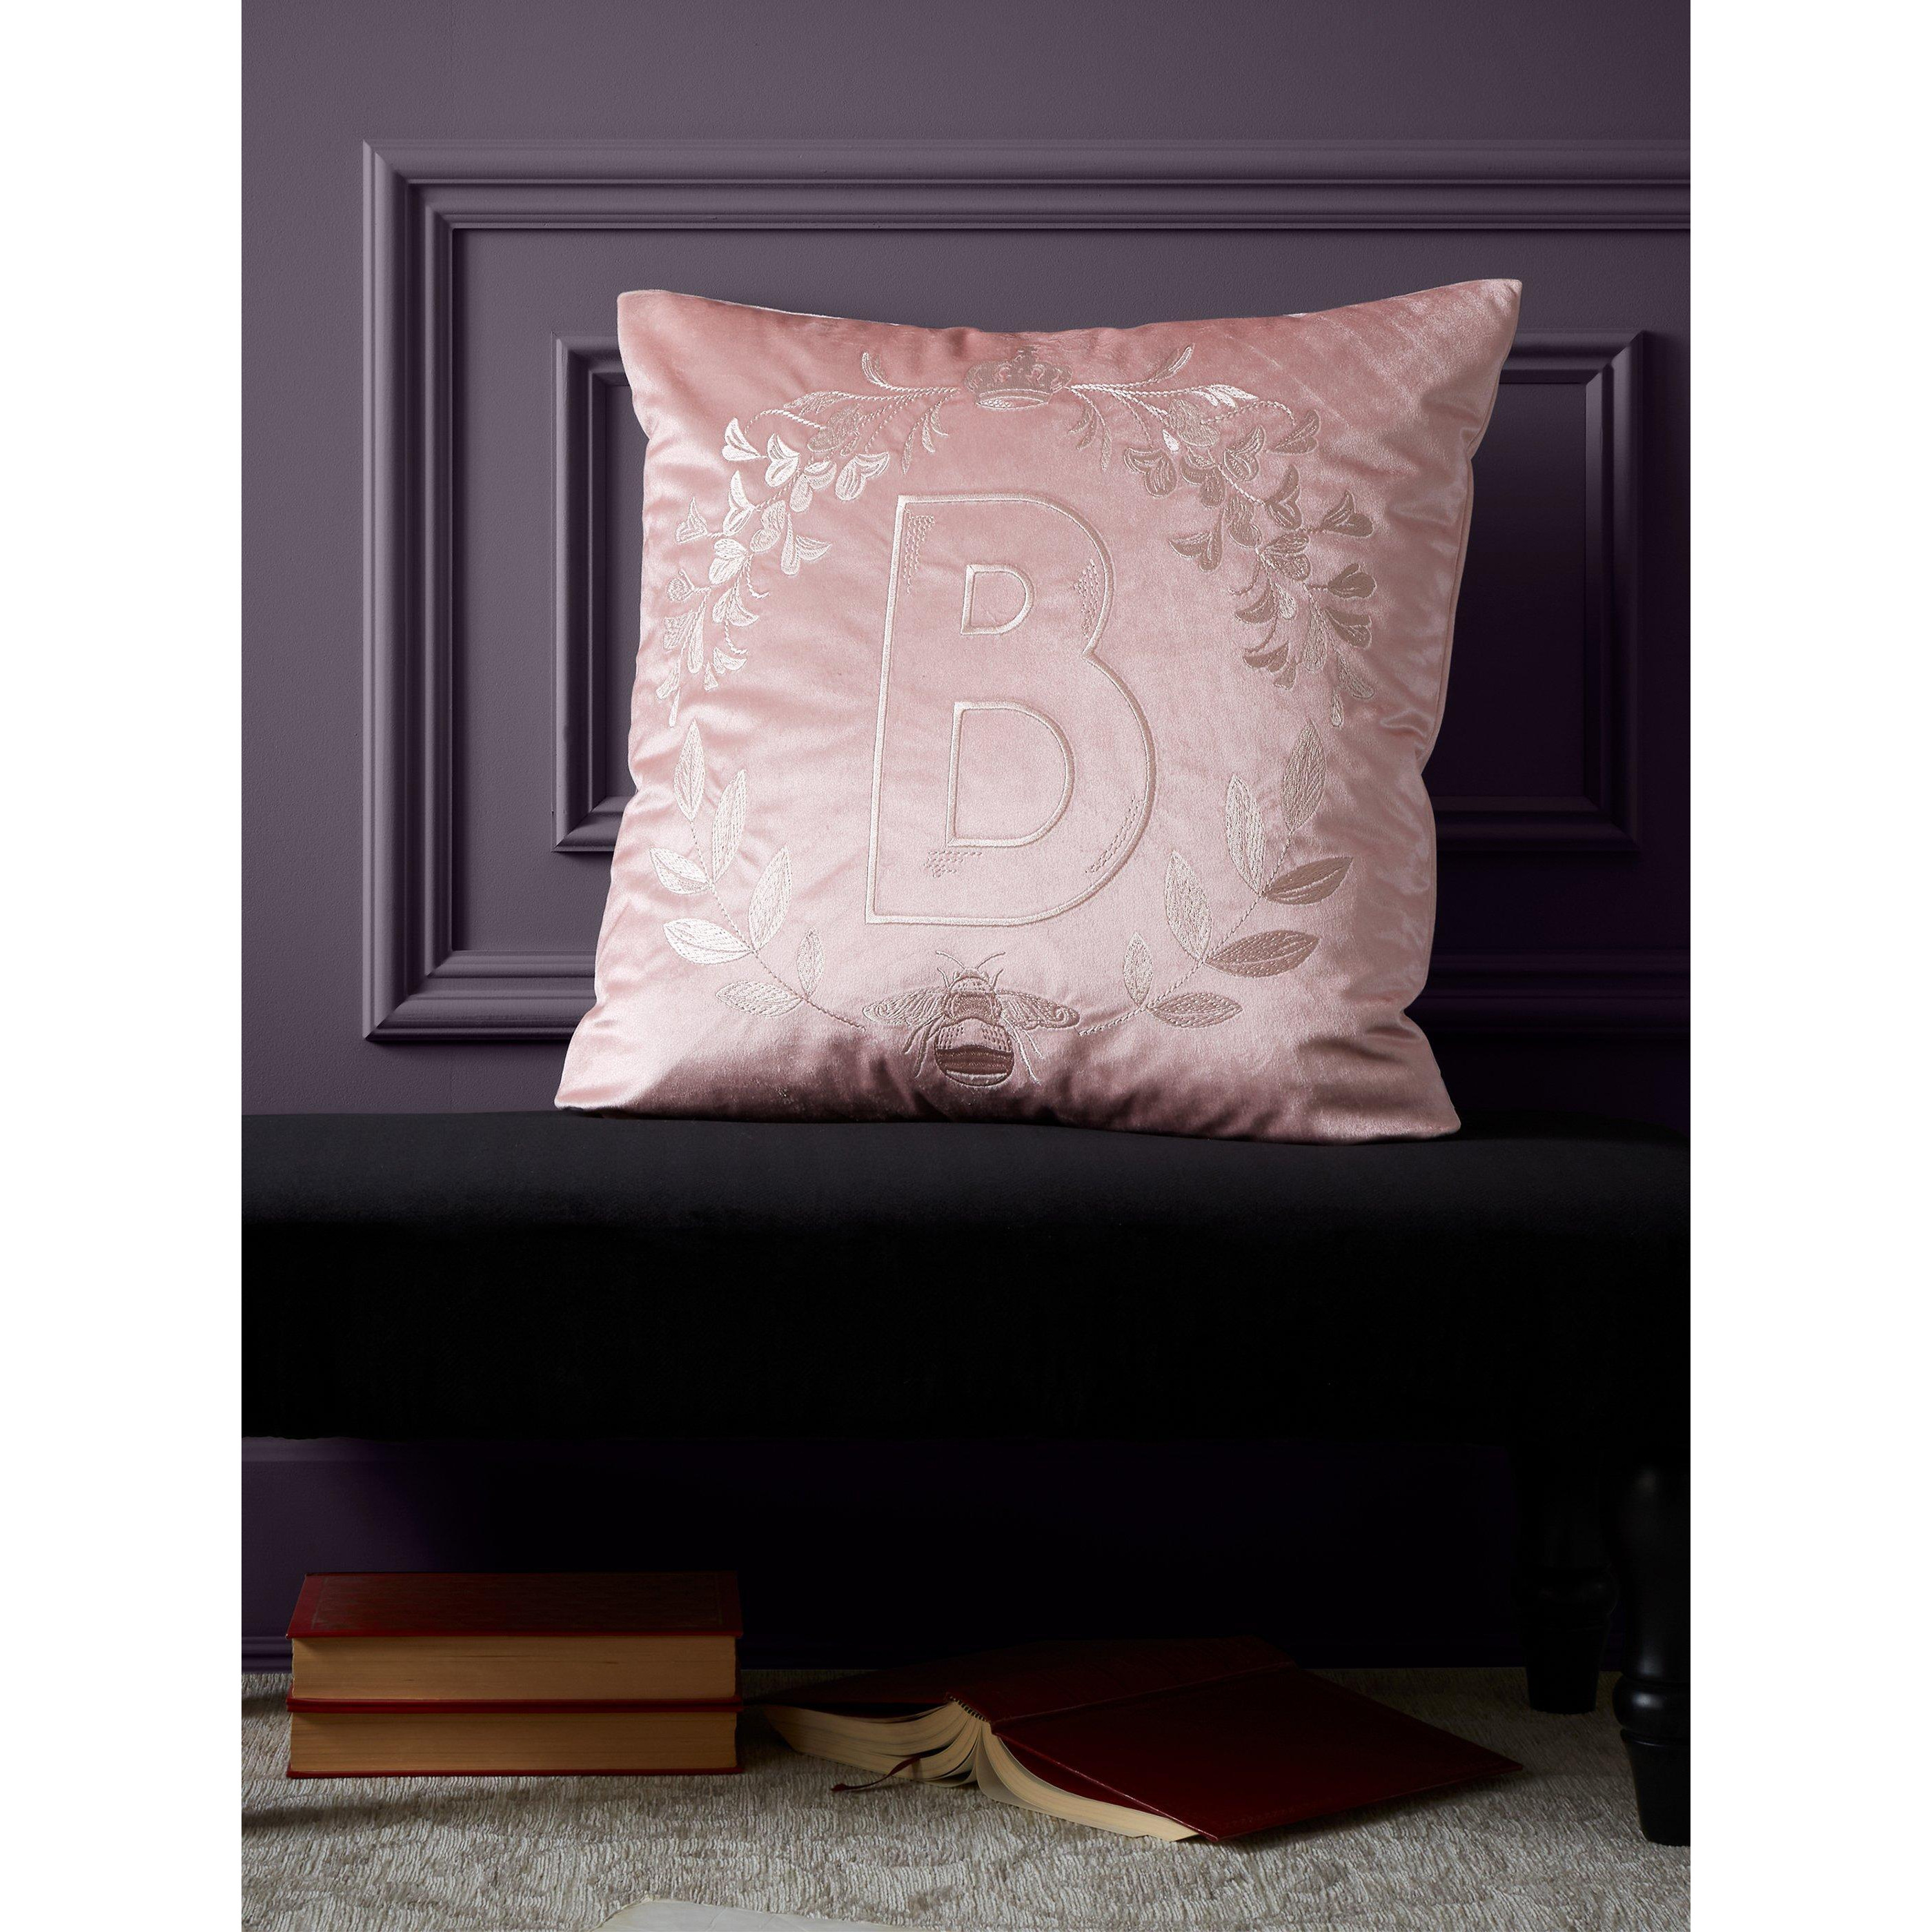 'Regency Crown' Cushion - image 1